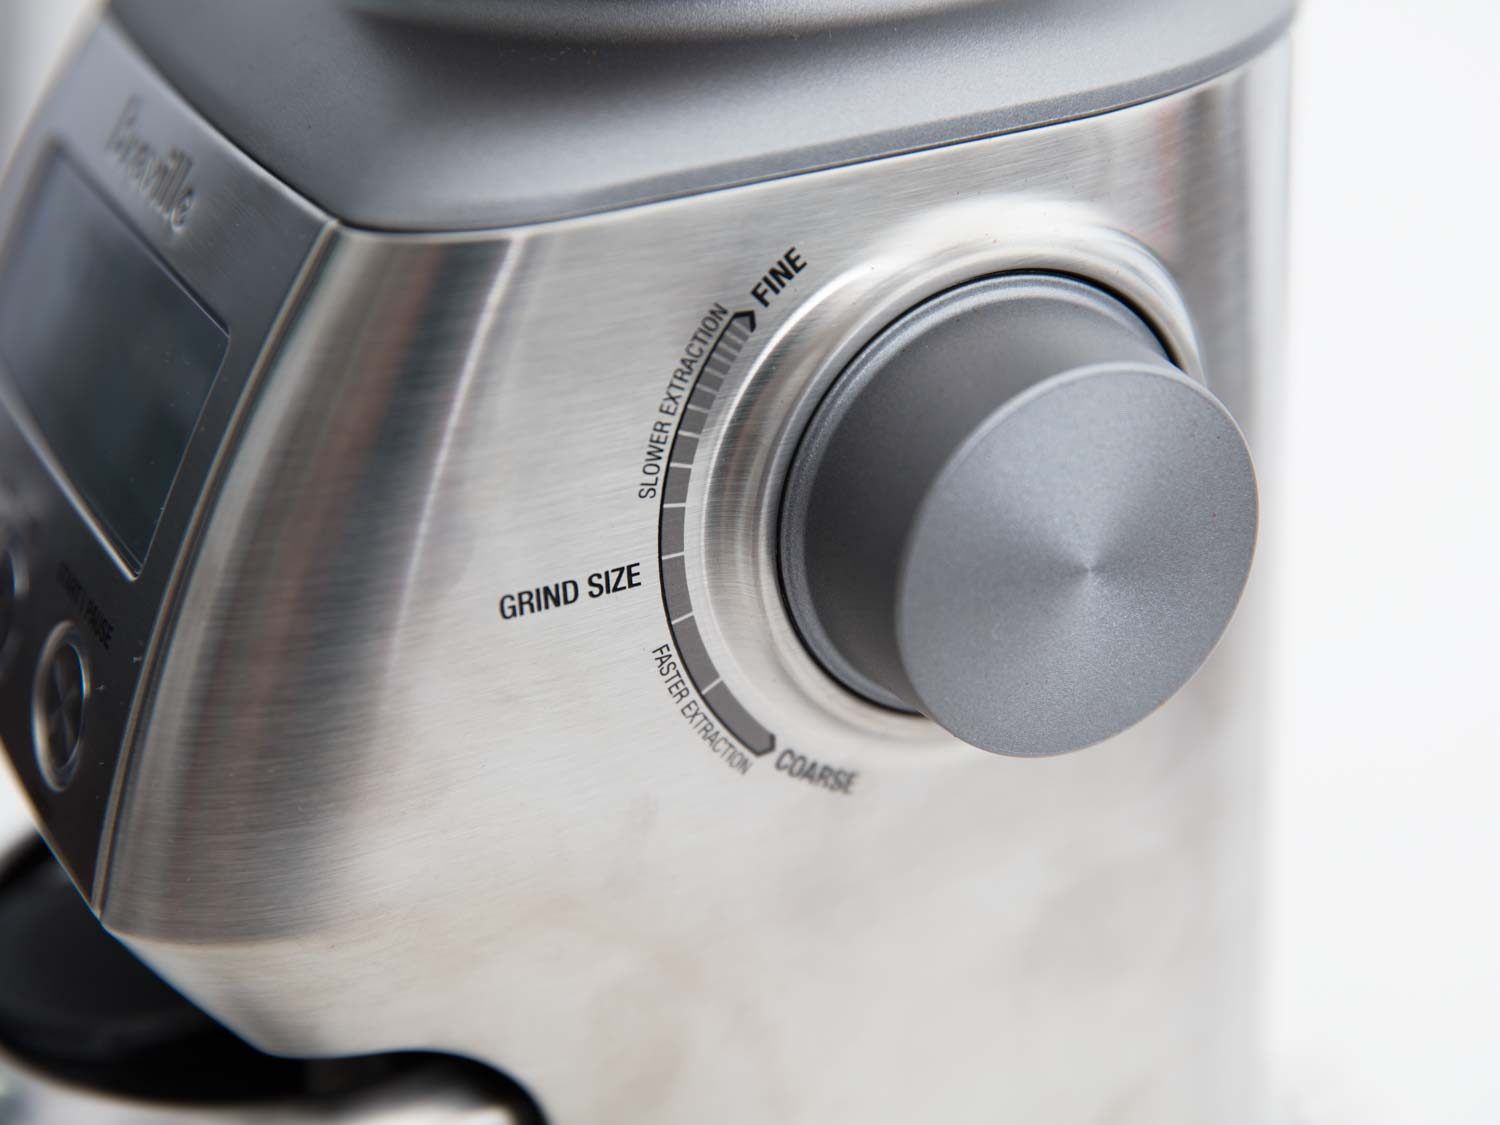 The grind adjustment knob on the Breville coffee grinder